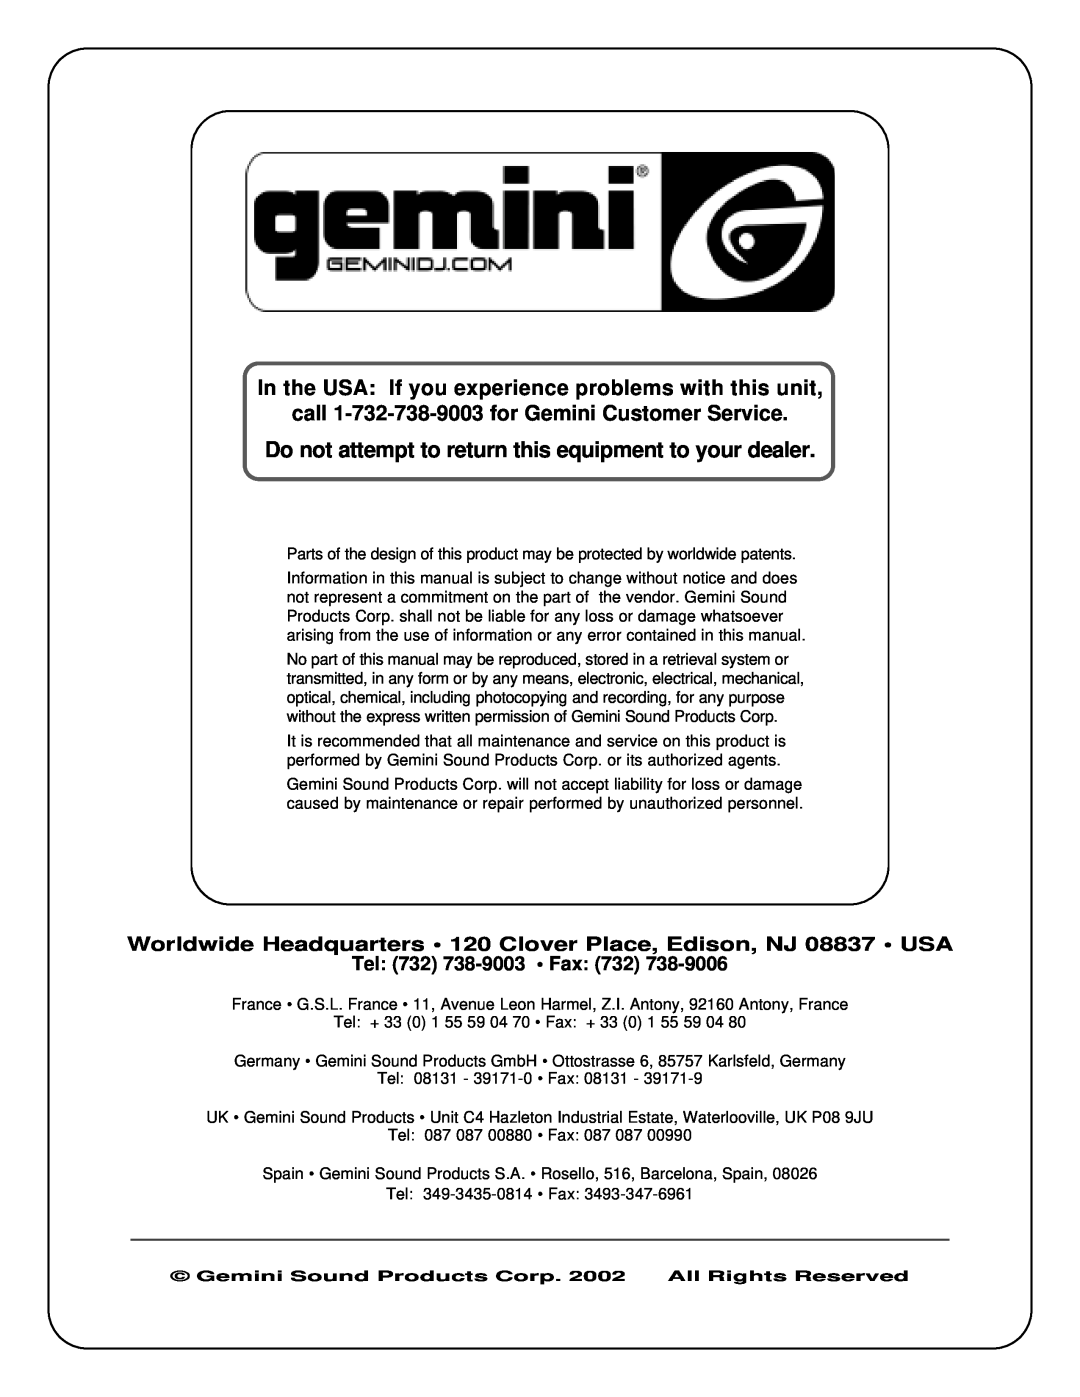 Gemini CDJ-15 manual call 1-732-738-9003for Gemini Customer Service, Tel 732 738-9003 Fax 